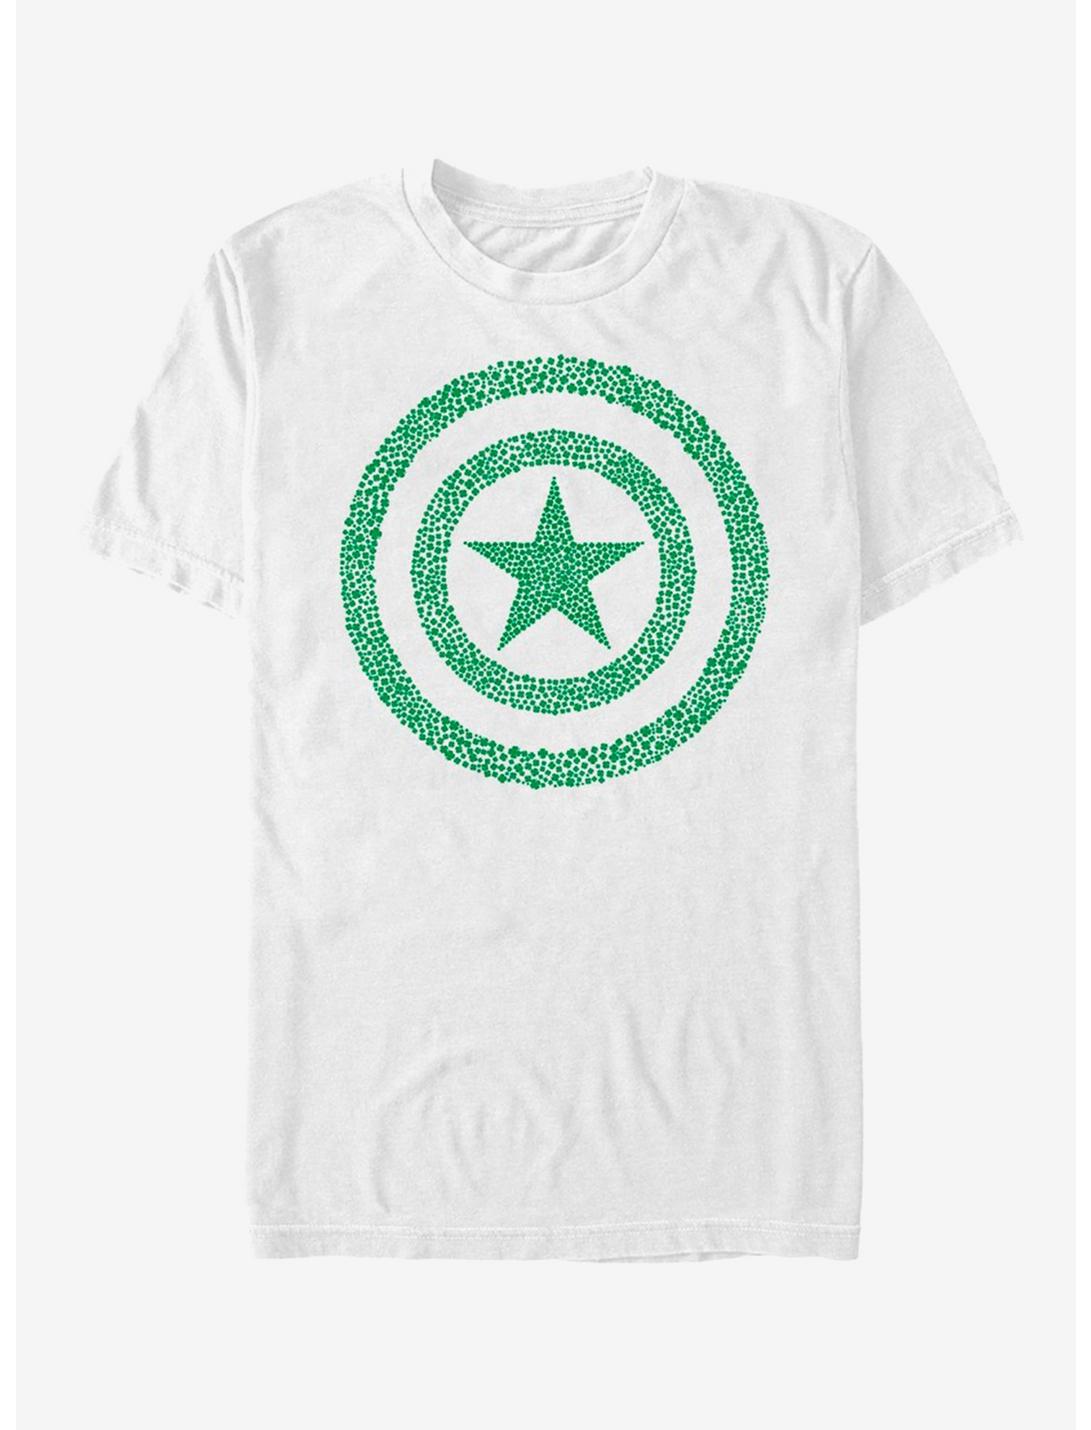 Marvel Cap America Clover  Shield T-Shirt, , hi-res